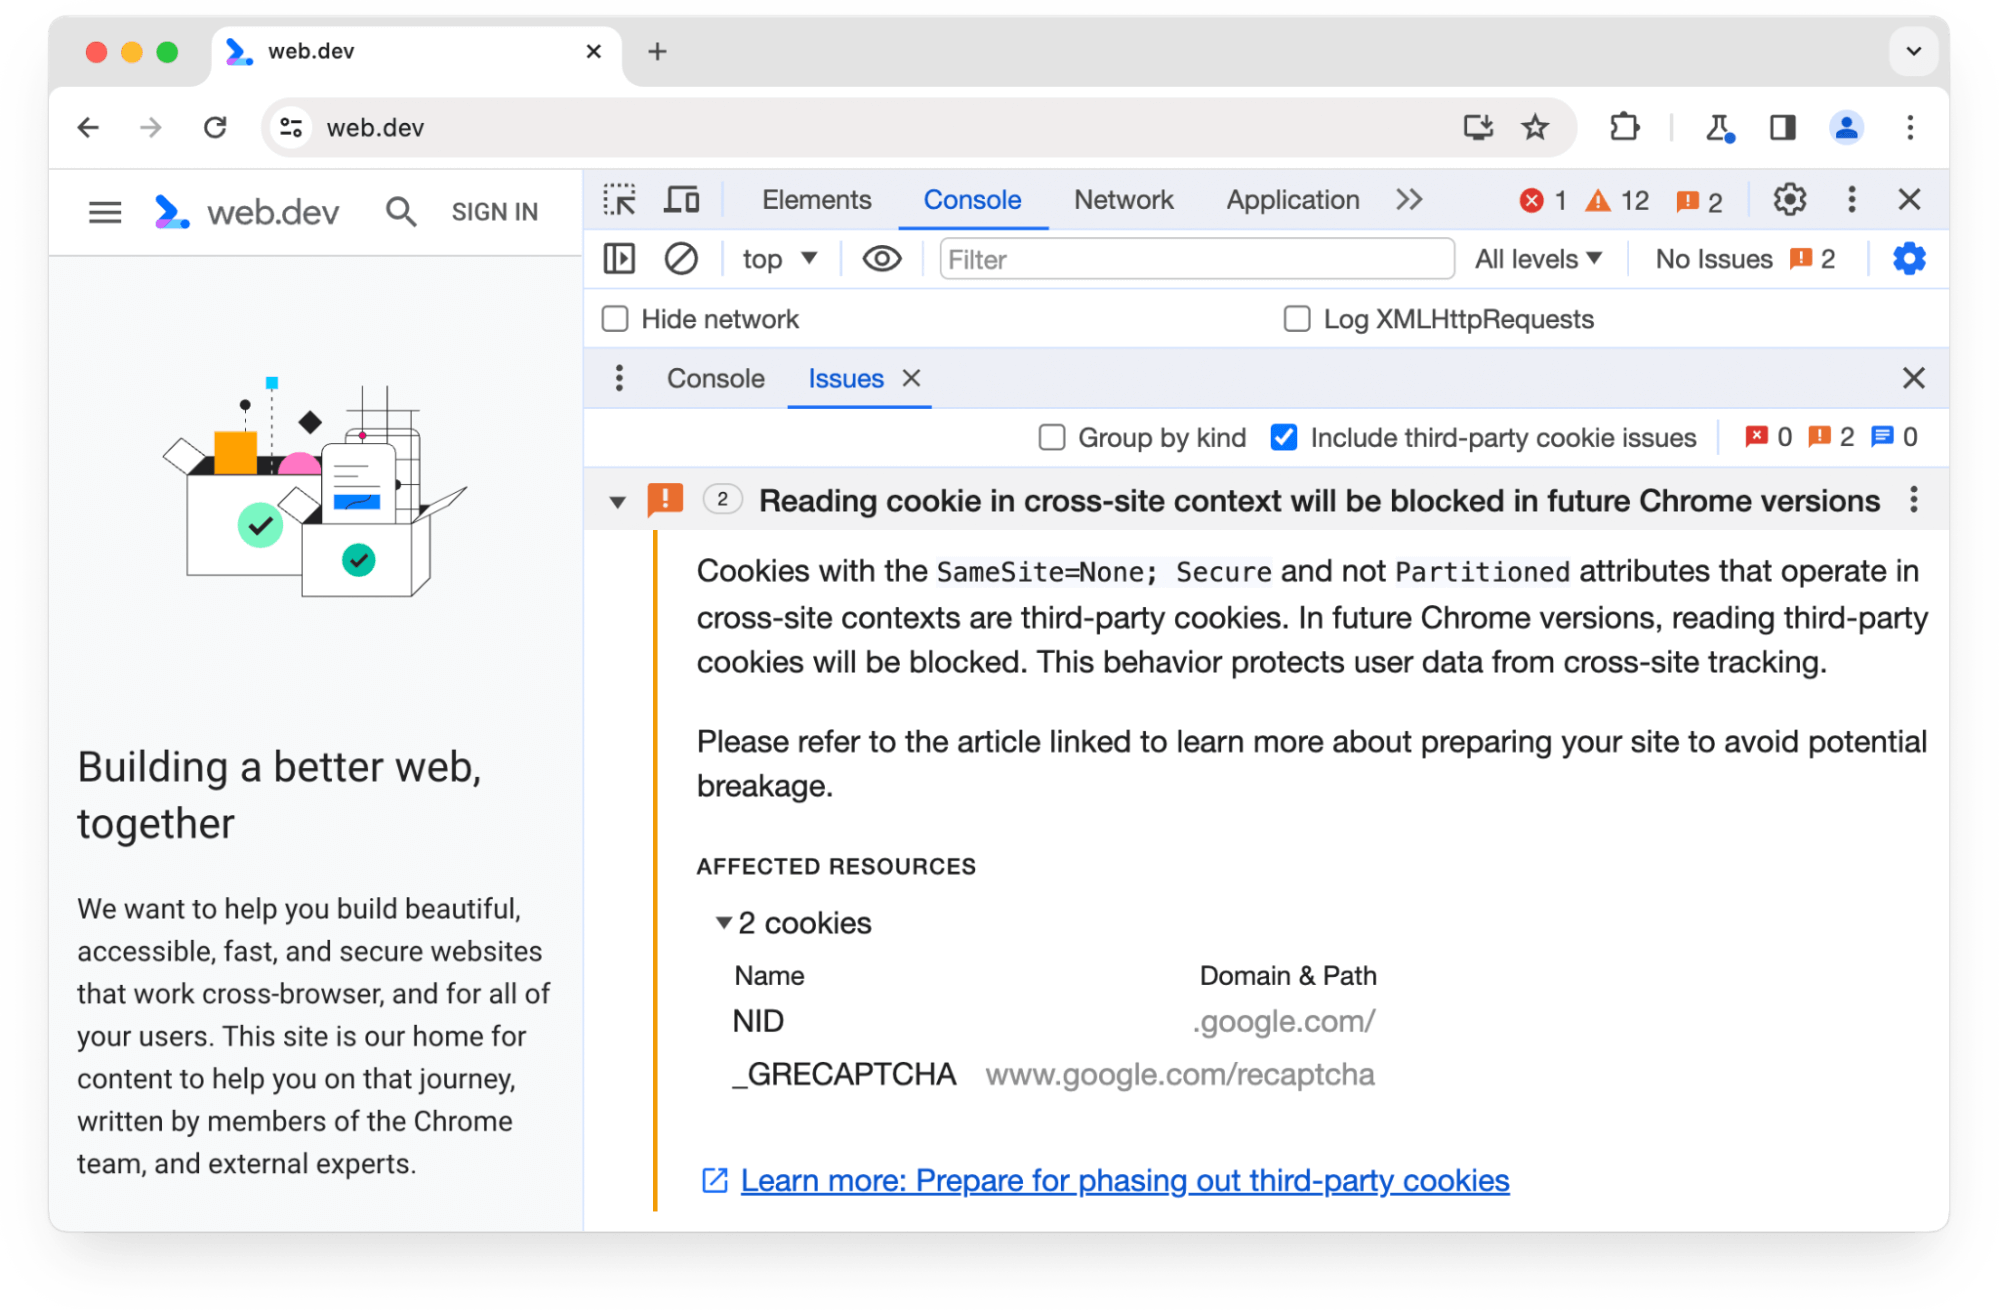 تحذر لوحة مشاكل &quot;أدوات مطوري البرامج في Chrome&quot; بشأن ملفَّي تعريف ارتباط تابعَين لجهة خارجية سيتم حظرهما في الإصدارات المستقبلية من Chrome.